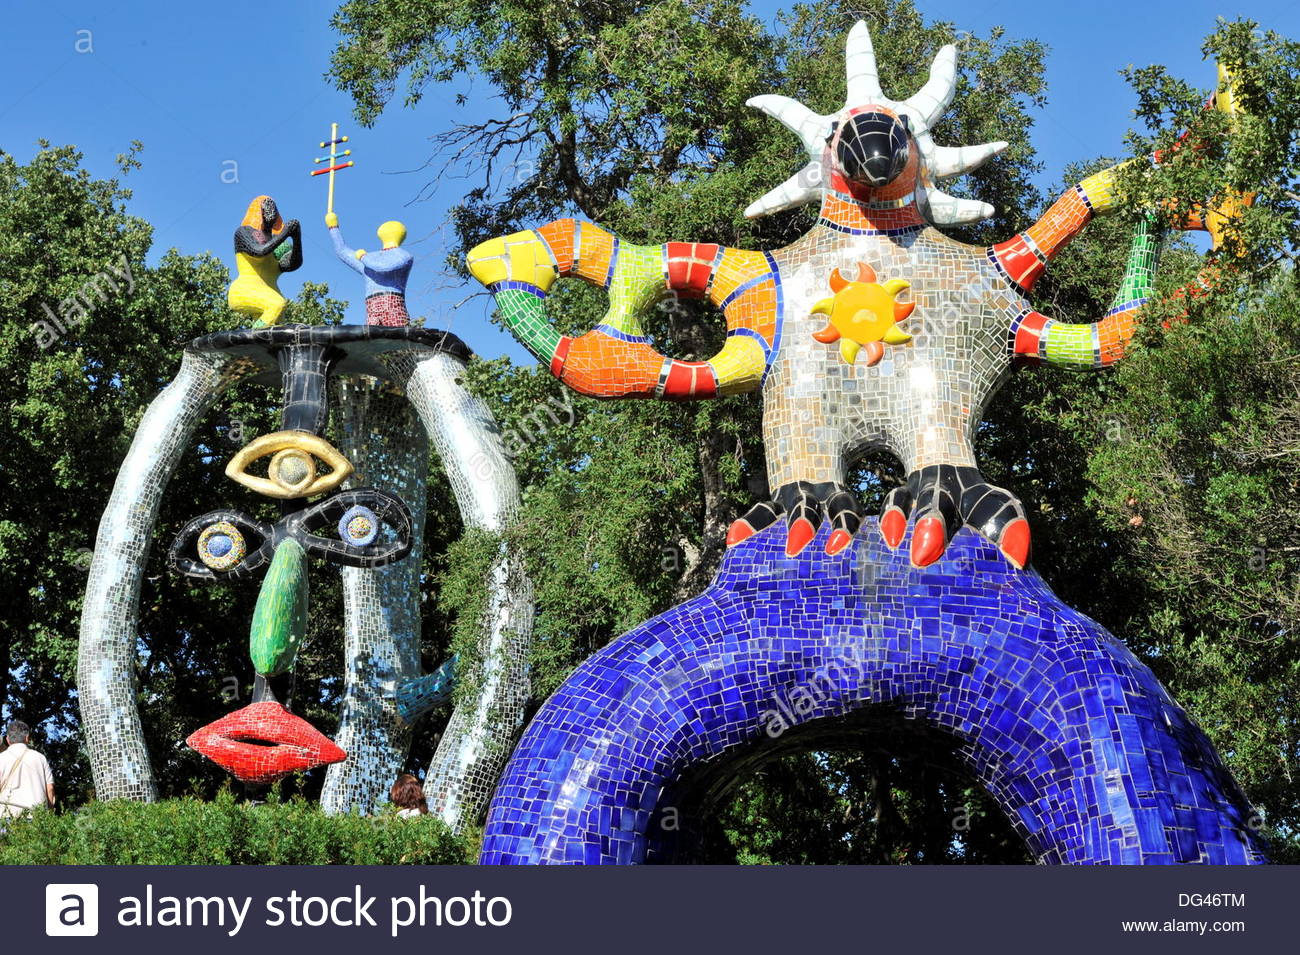 Tarot Garten toskana Elegant Sculptures Of the French Artist Niki De Saint Phalle In the